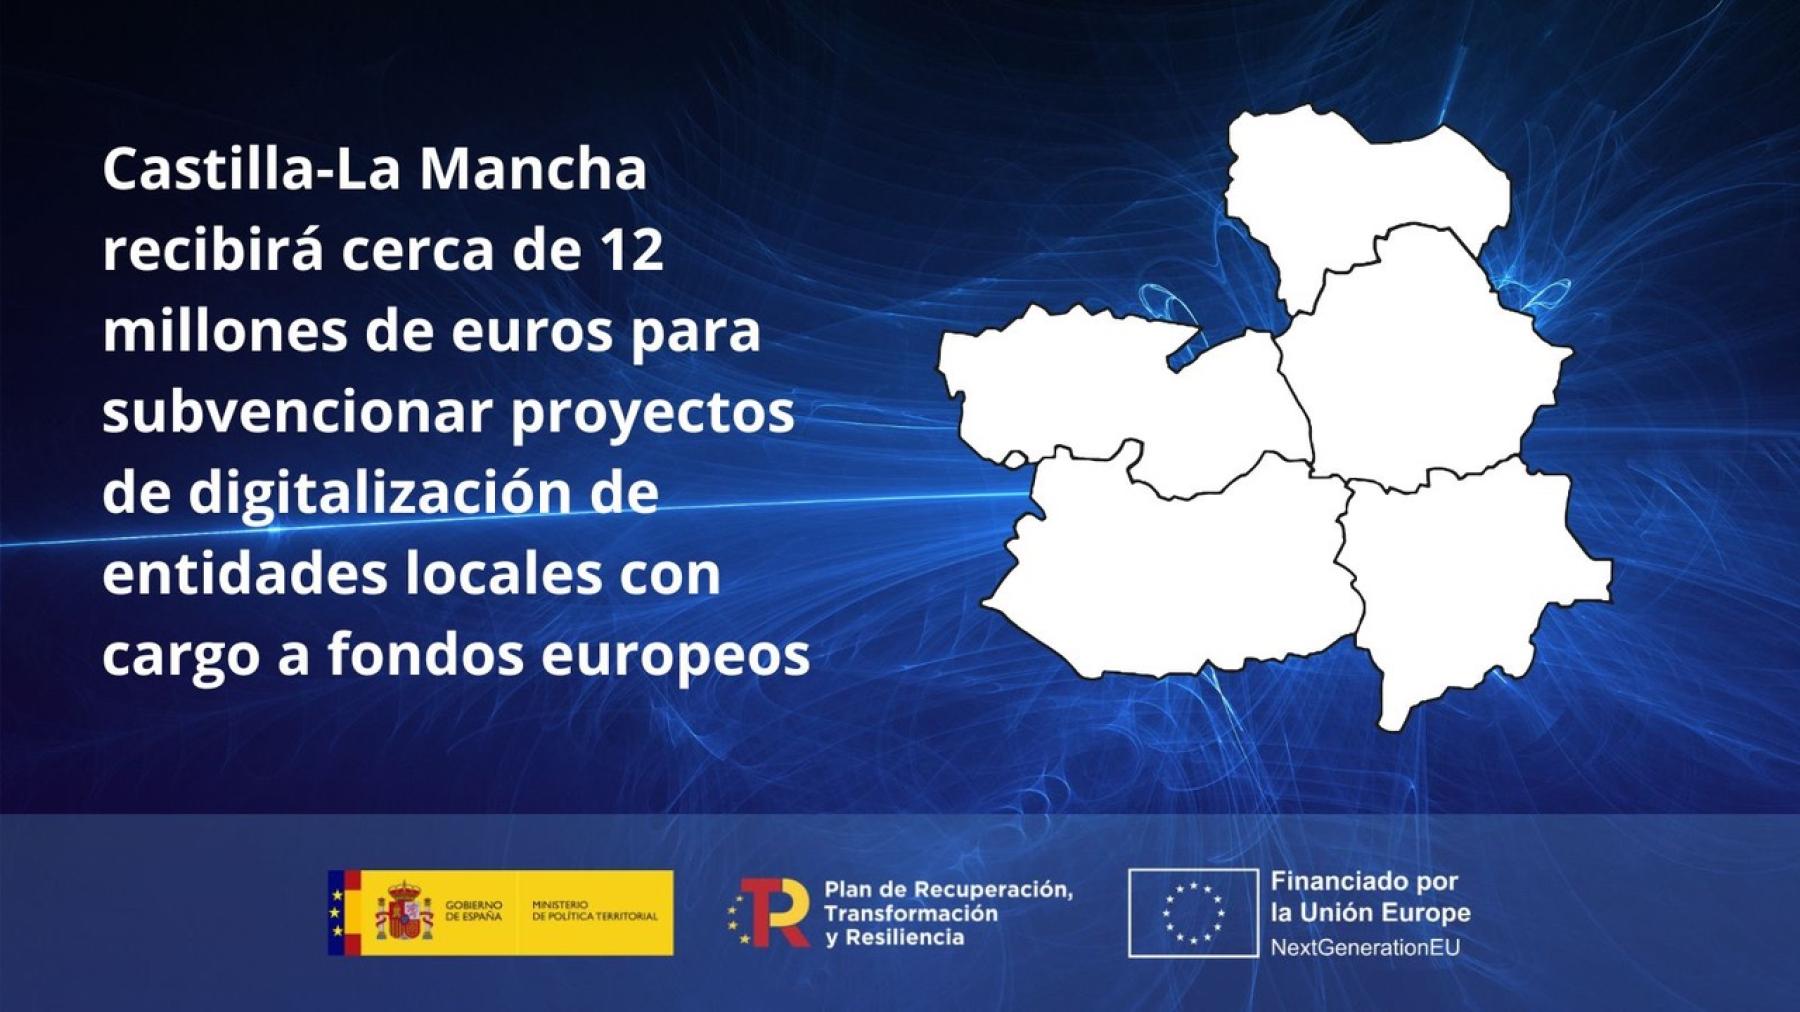 Castilla-La Mancha recibirá cerca de 12 millones de euros para subvencionar proyectos de digitalización de entidades locales con cargo a fondos europeos